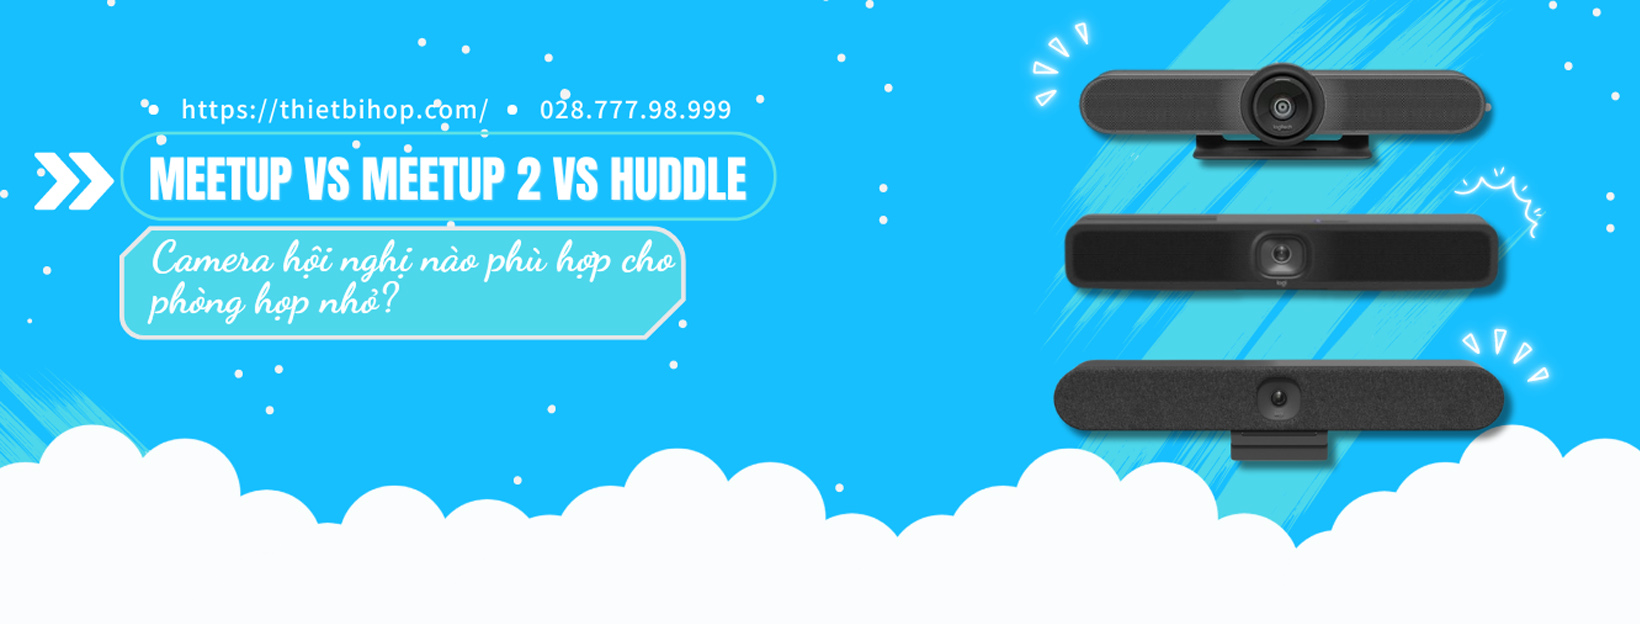 meetup vs meetup 2 vs huddle: cái nào phù hợp